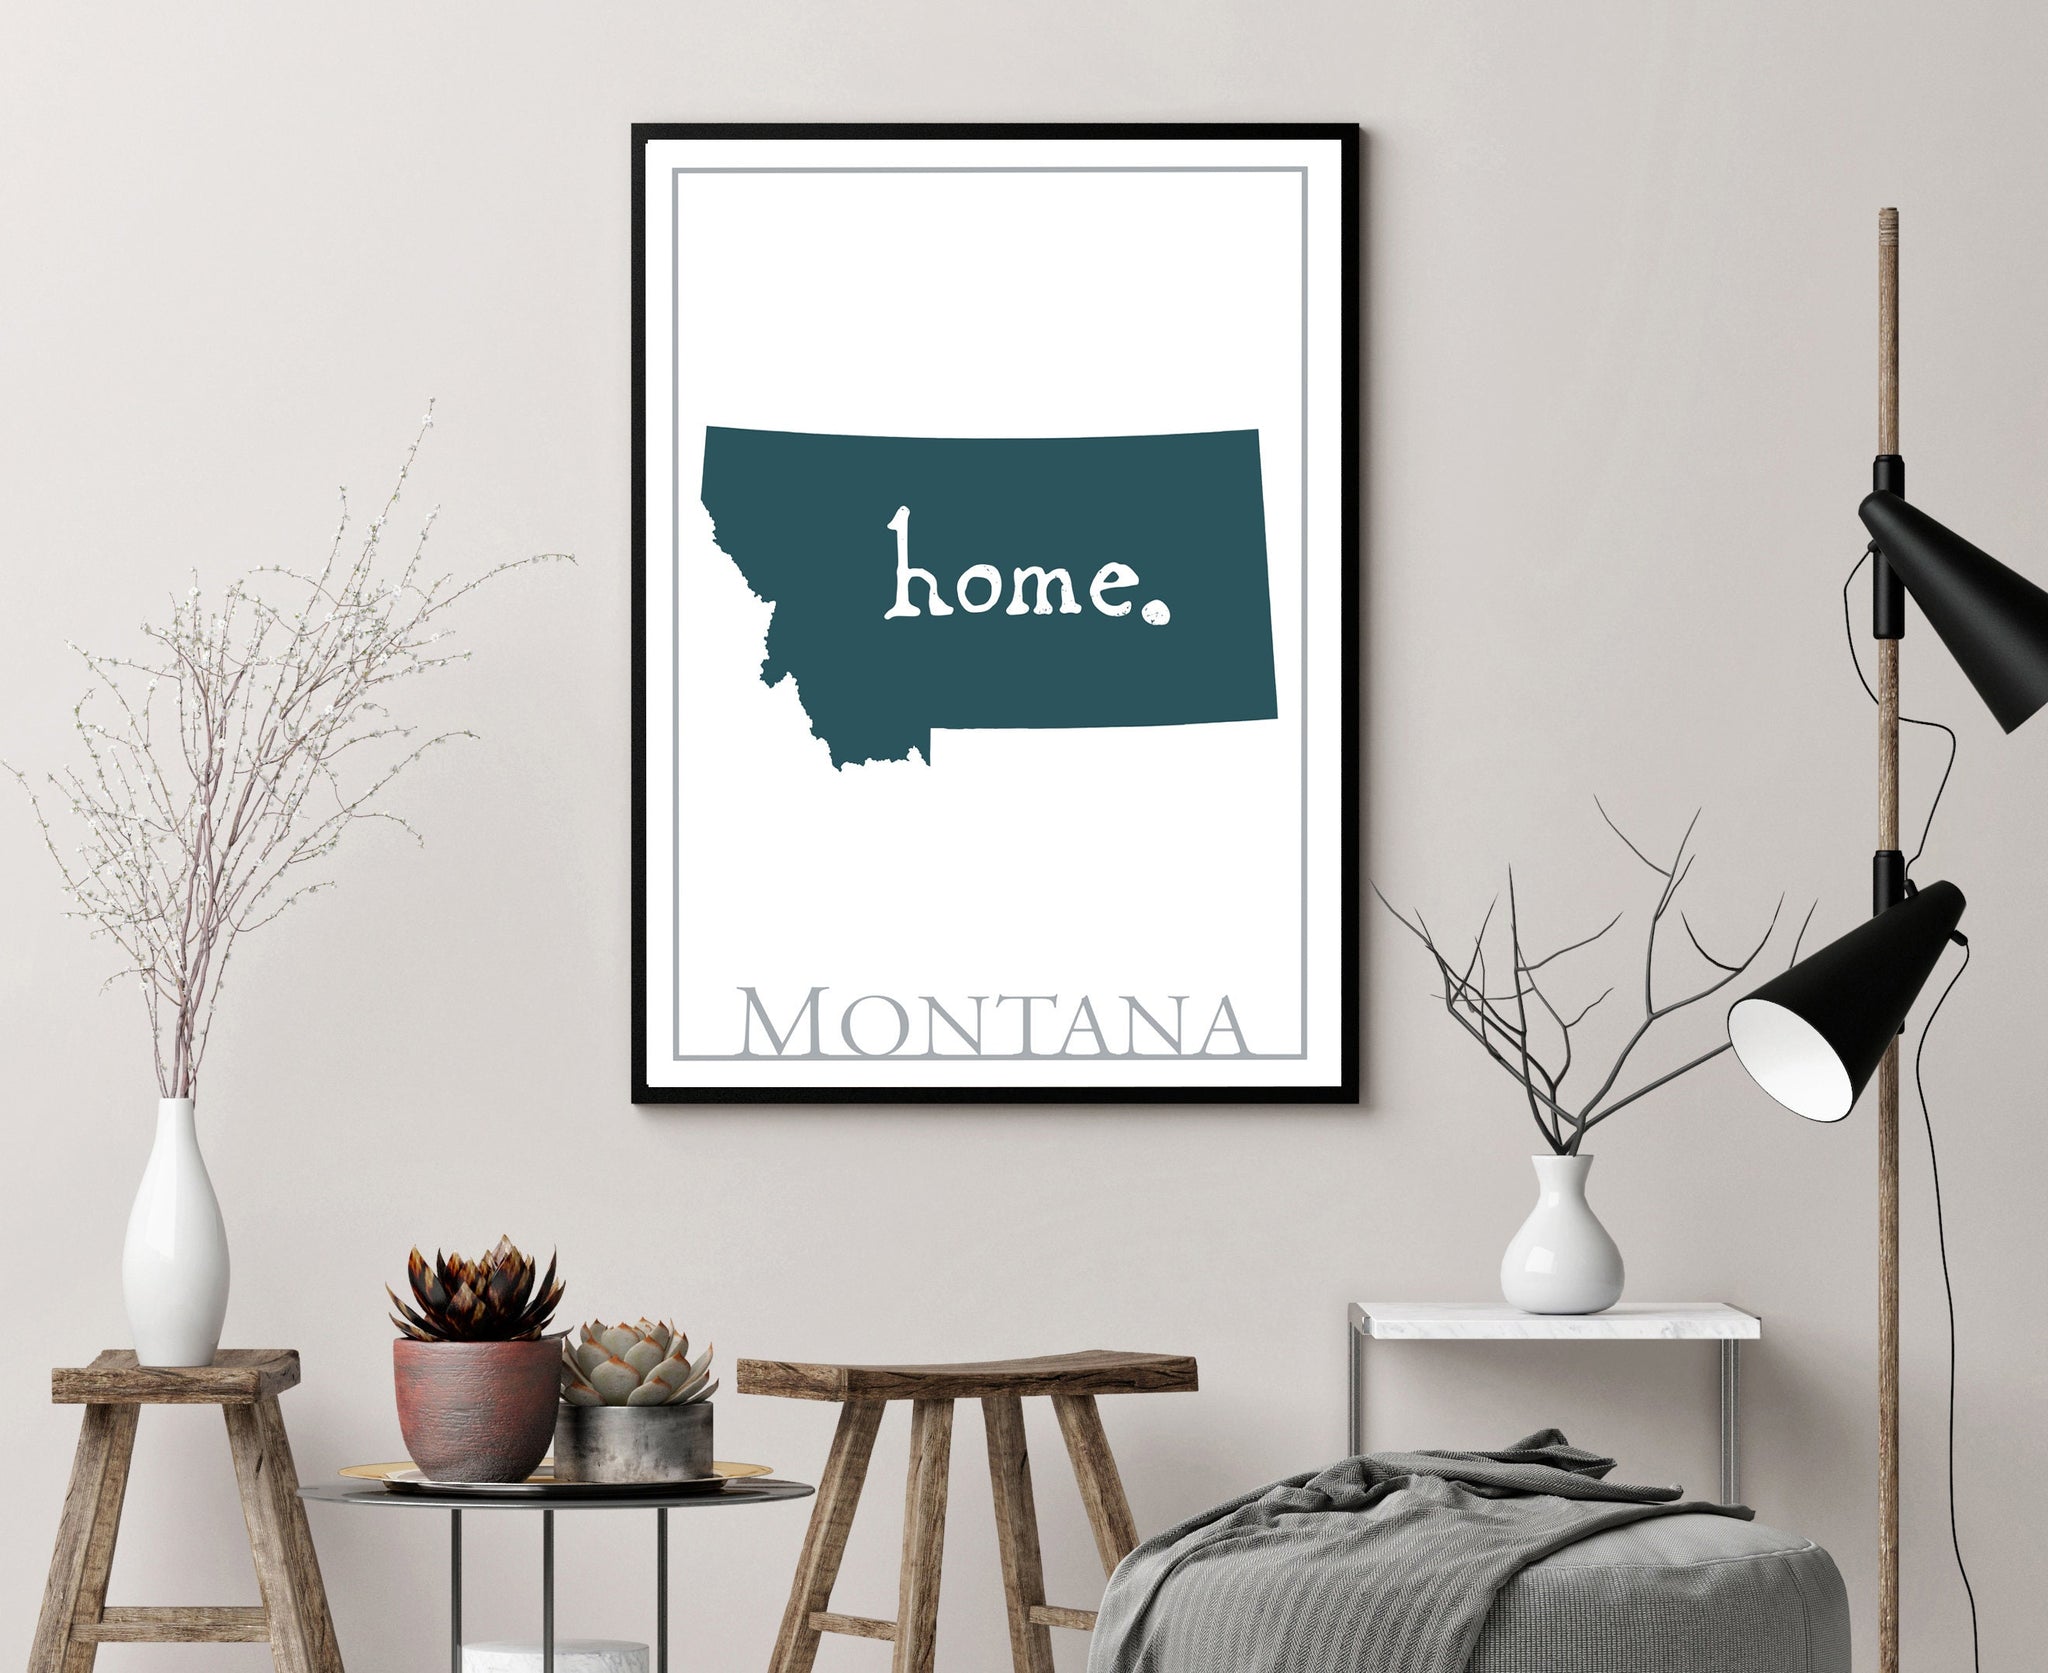 Montana Map Wall Art, Montana Modern Map Print, City map wall decor, Montana City Poster Print, Montana State Poster, Home wall decor,Poster